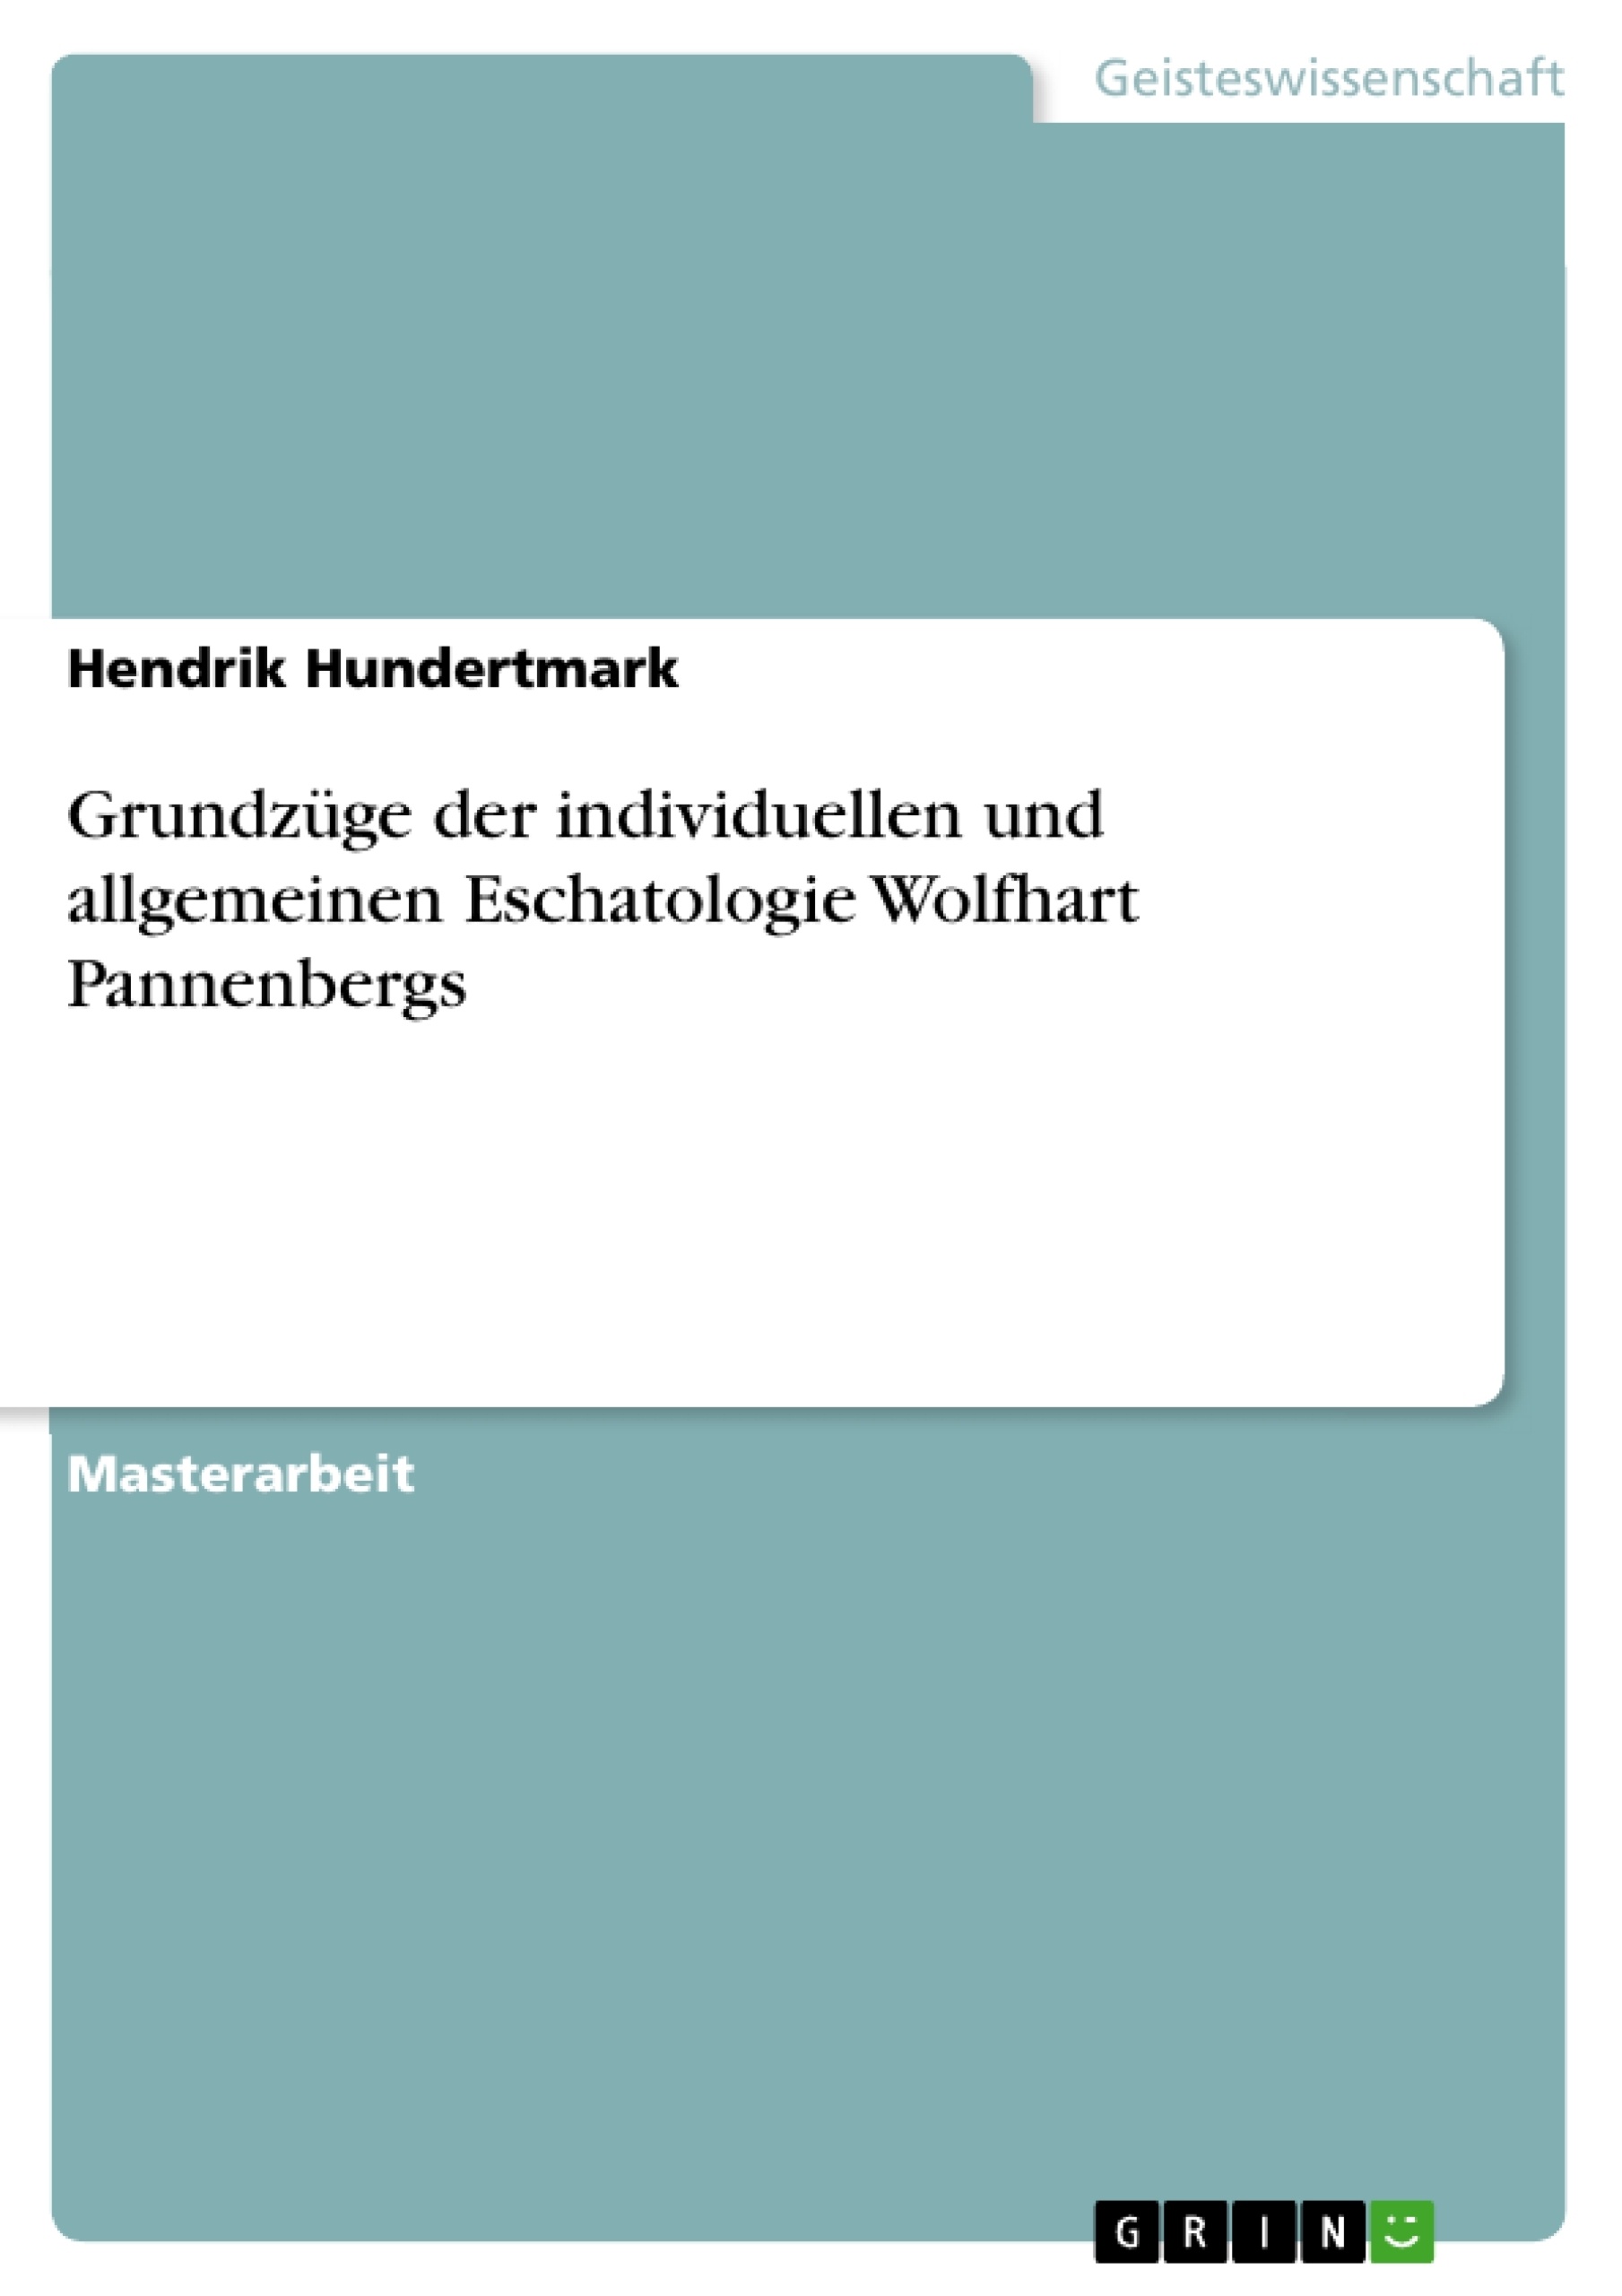 Title: Grundzüge der individuellen und allgemeinen Eschatologie Wolfhart Pannenbergs